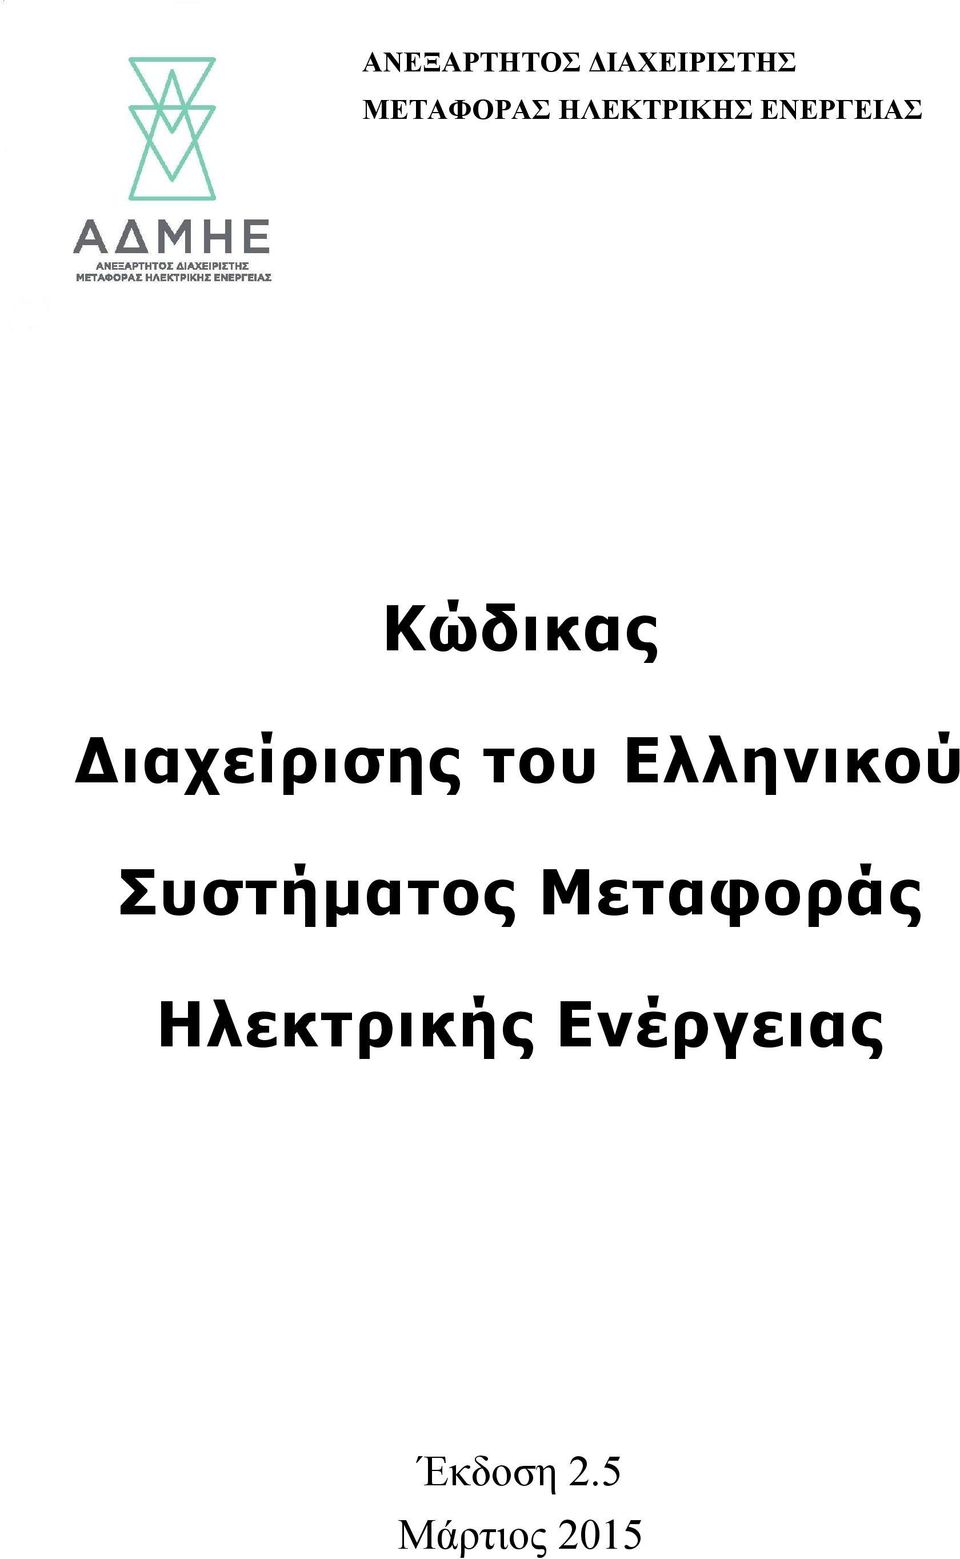 Διαχείρισης του Ελληνικού Συστήματος